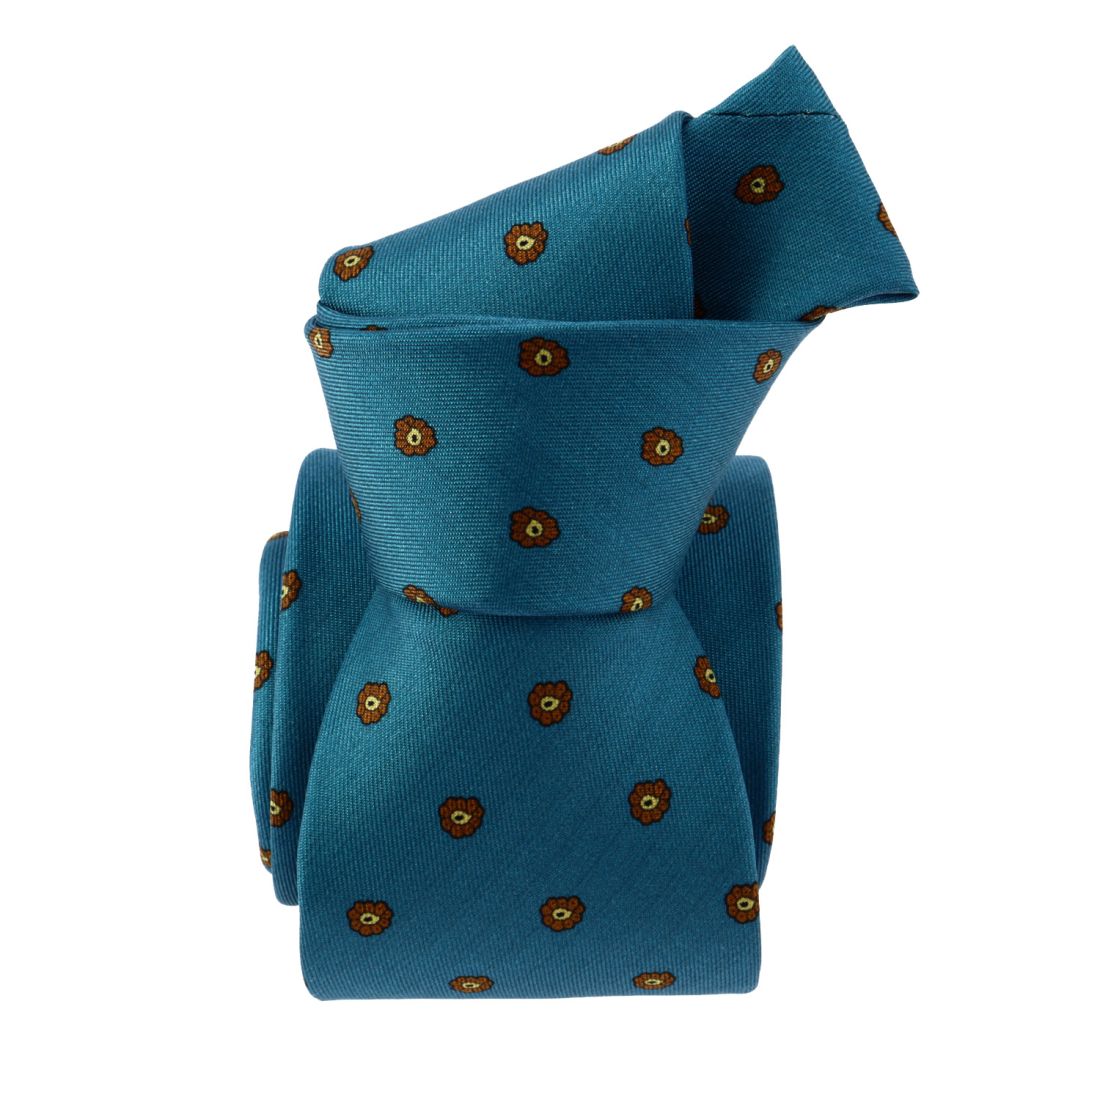 Cravate 3 plis en soie, Clichy - Bleu Turquoise et fleurs, Tony et Paul et  Atelier Boivin